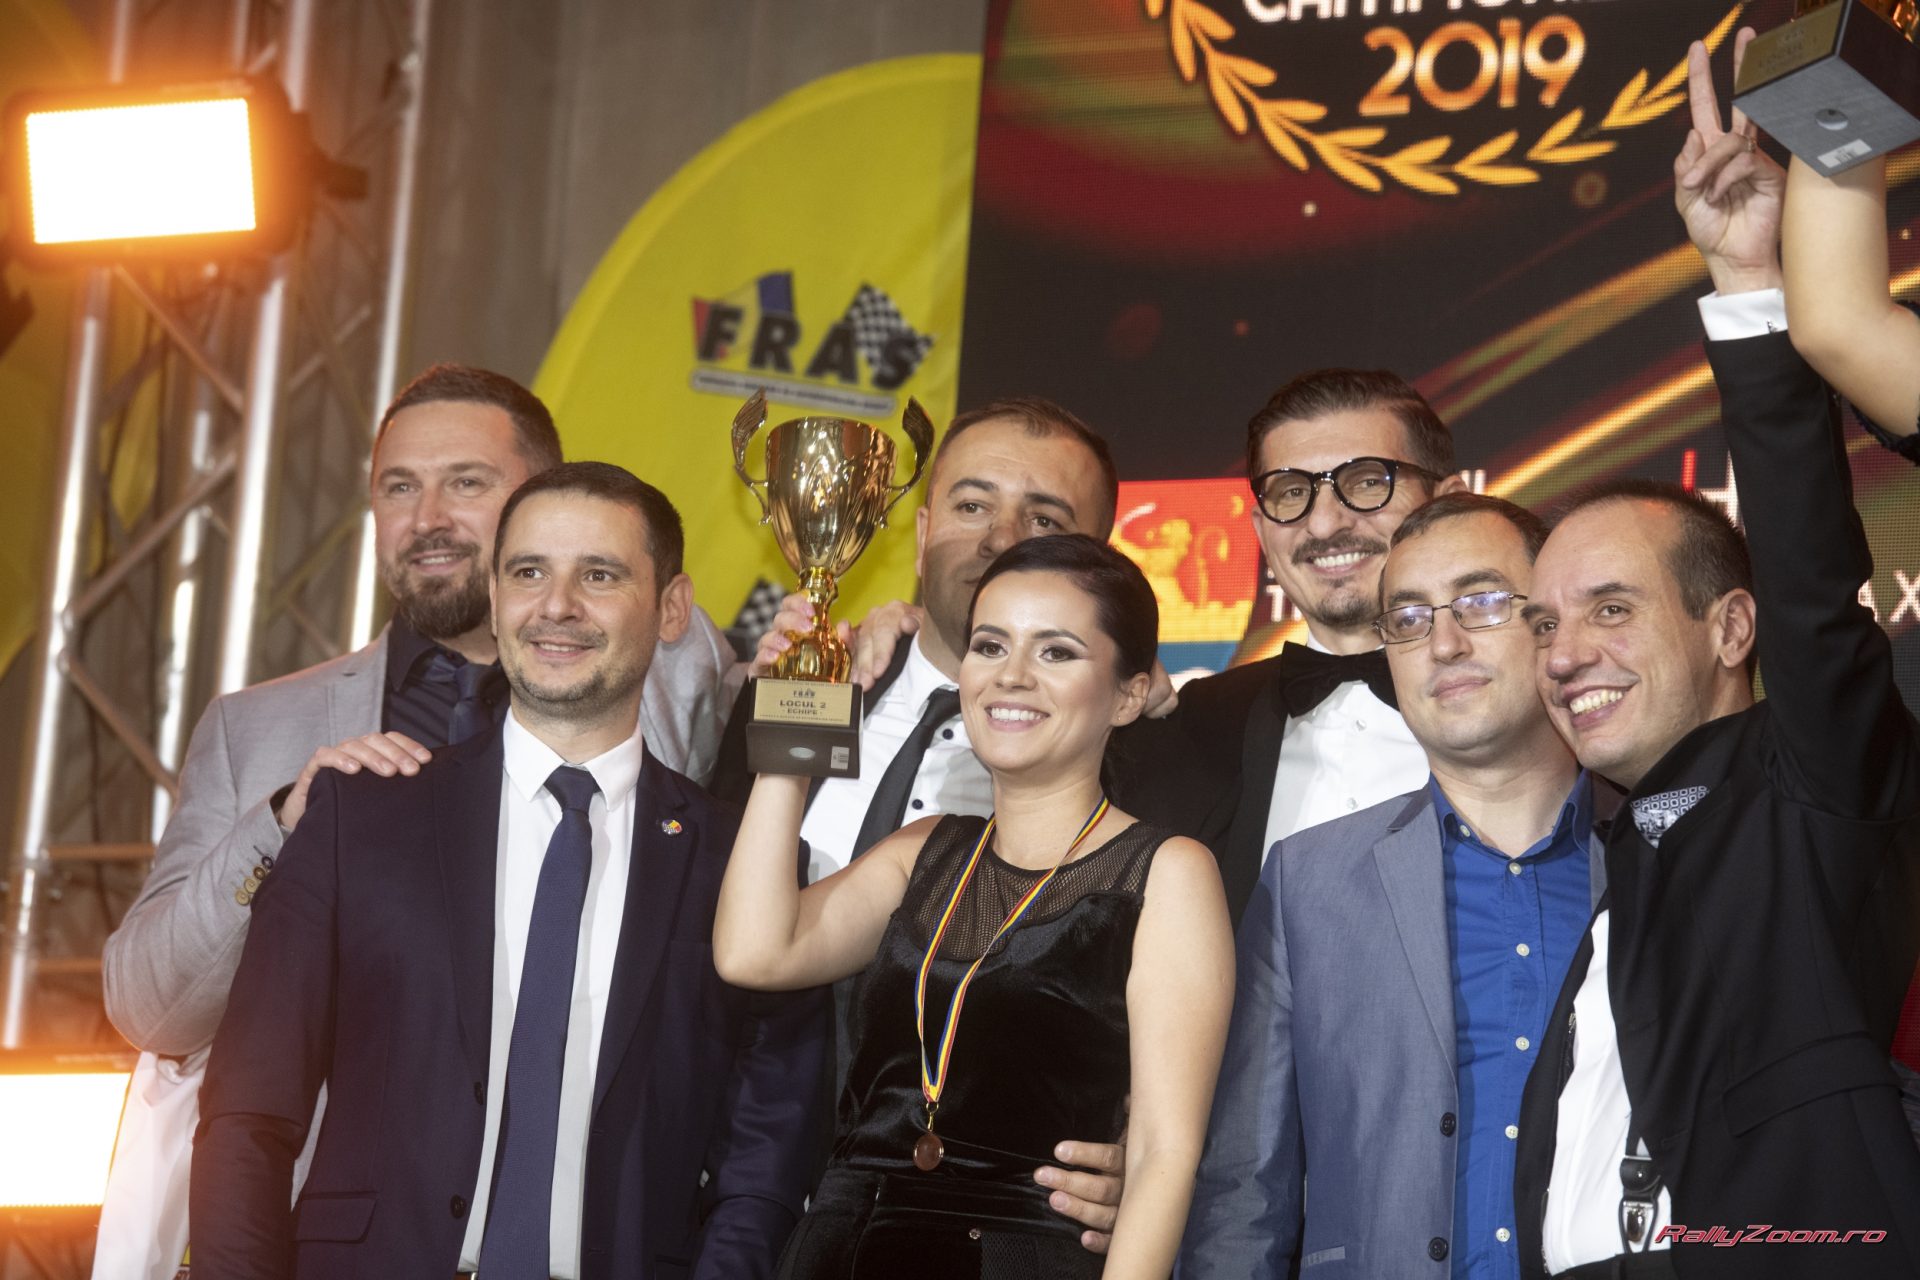 Echipajele DTO Rally Team au fost premiate la Gala Campionilor 2019